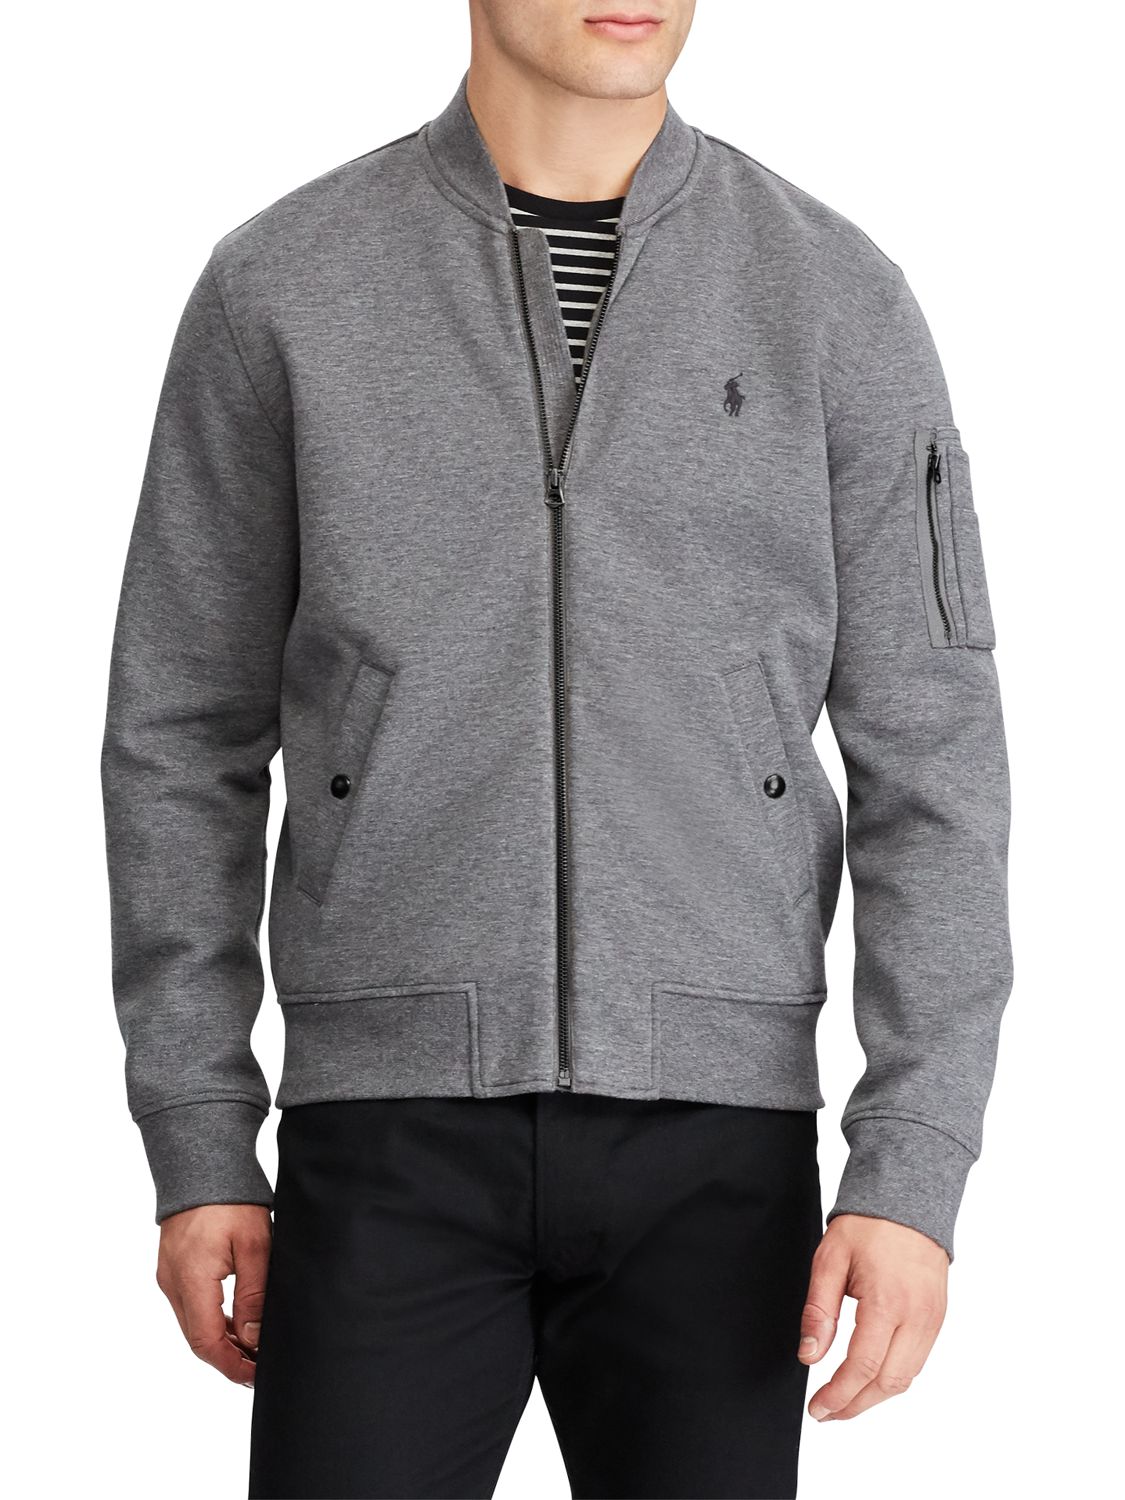 polo jacket grey